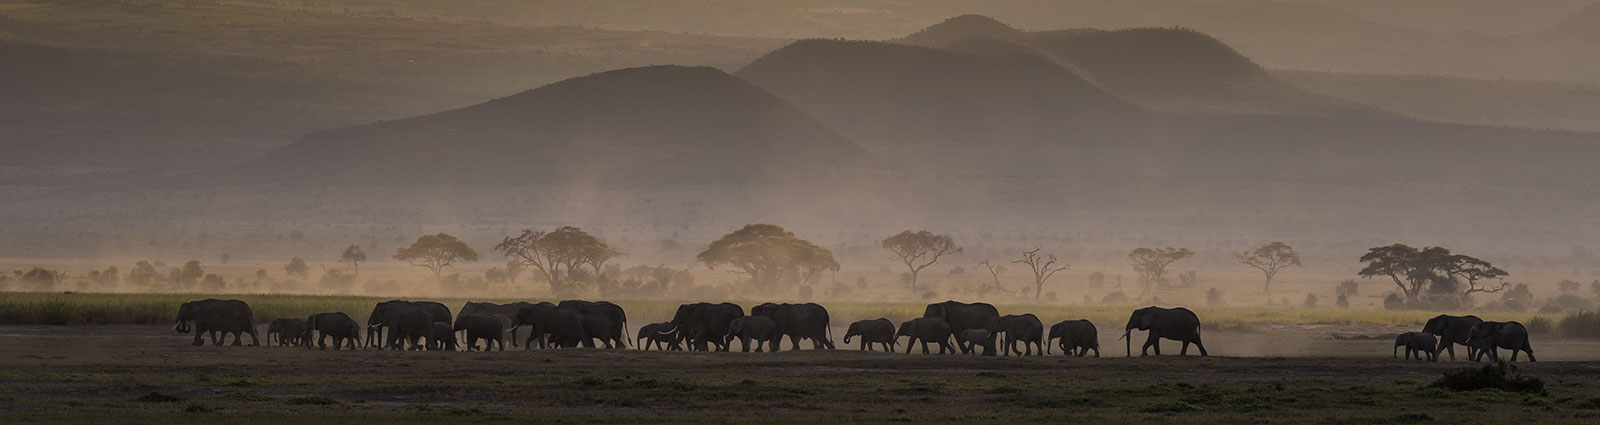 Elephants at sunset, Amboseli National Park, Africa